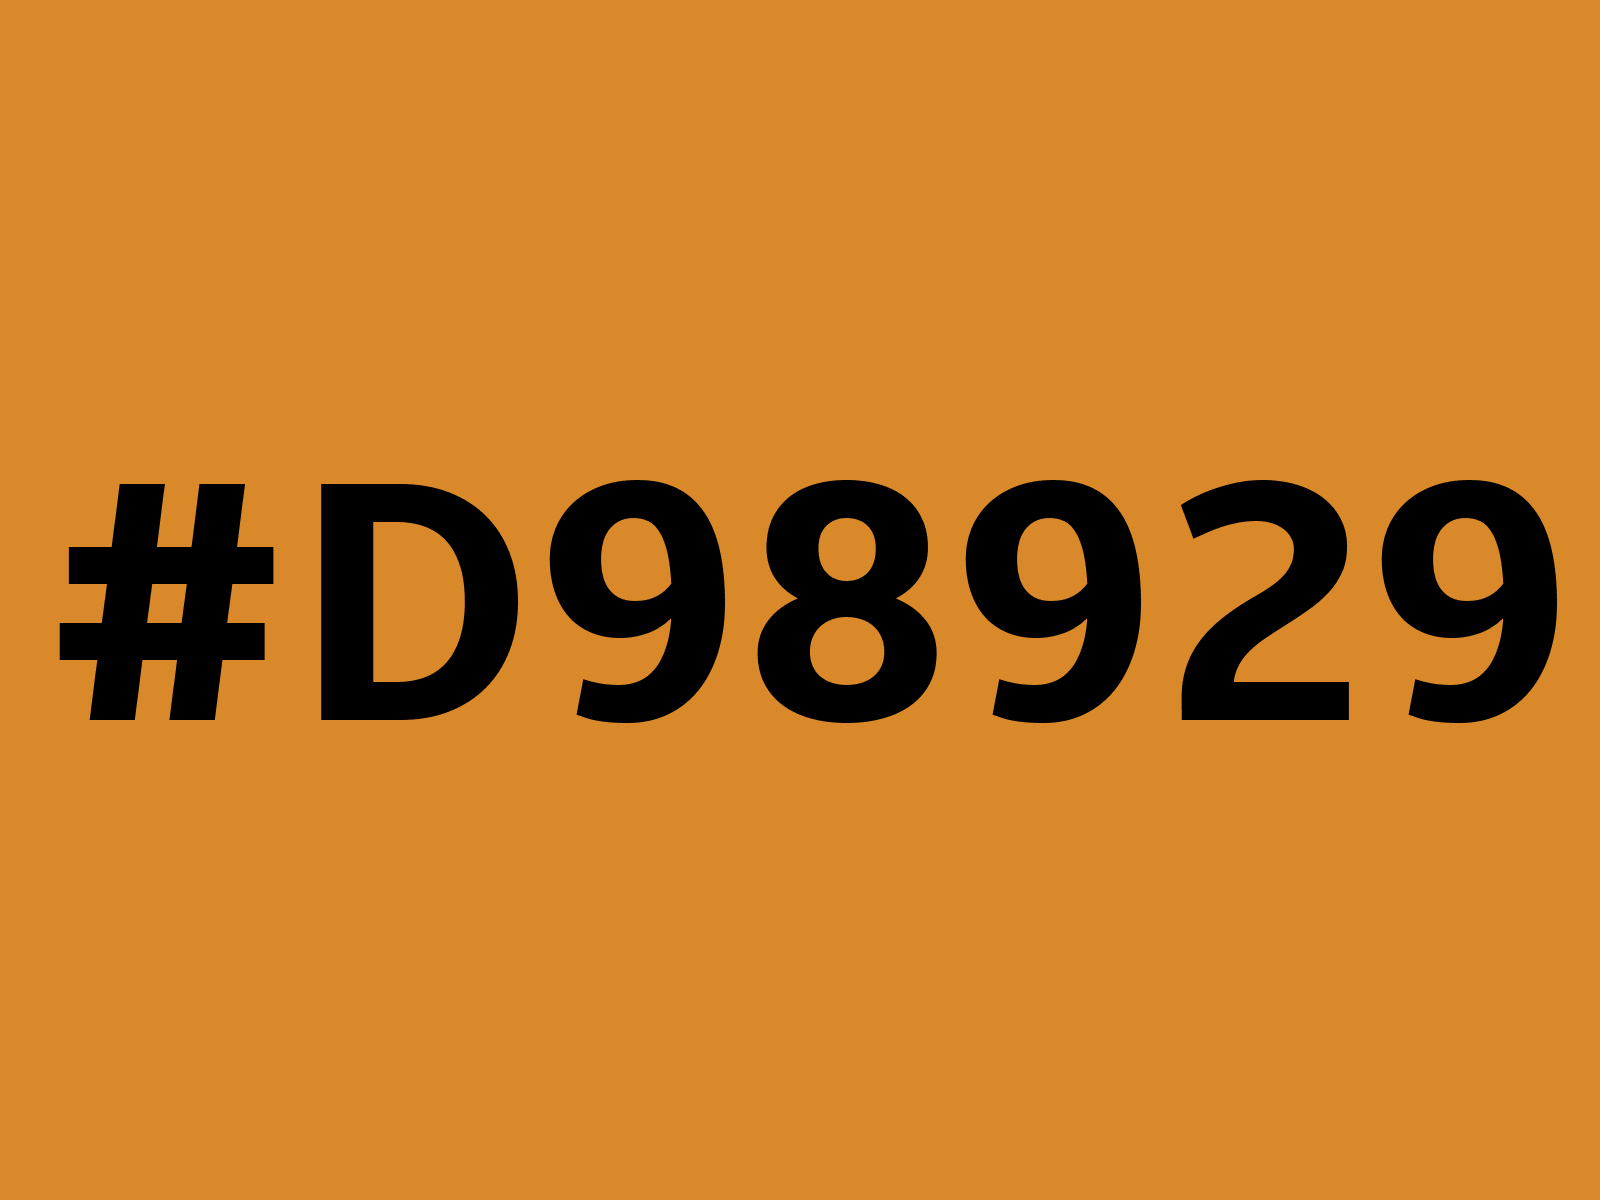 d98929